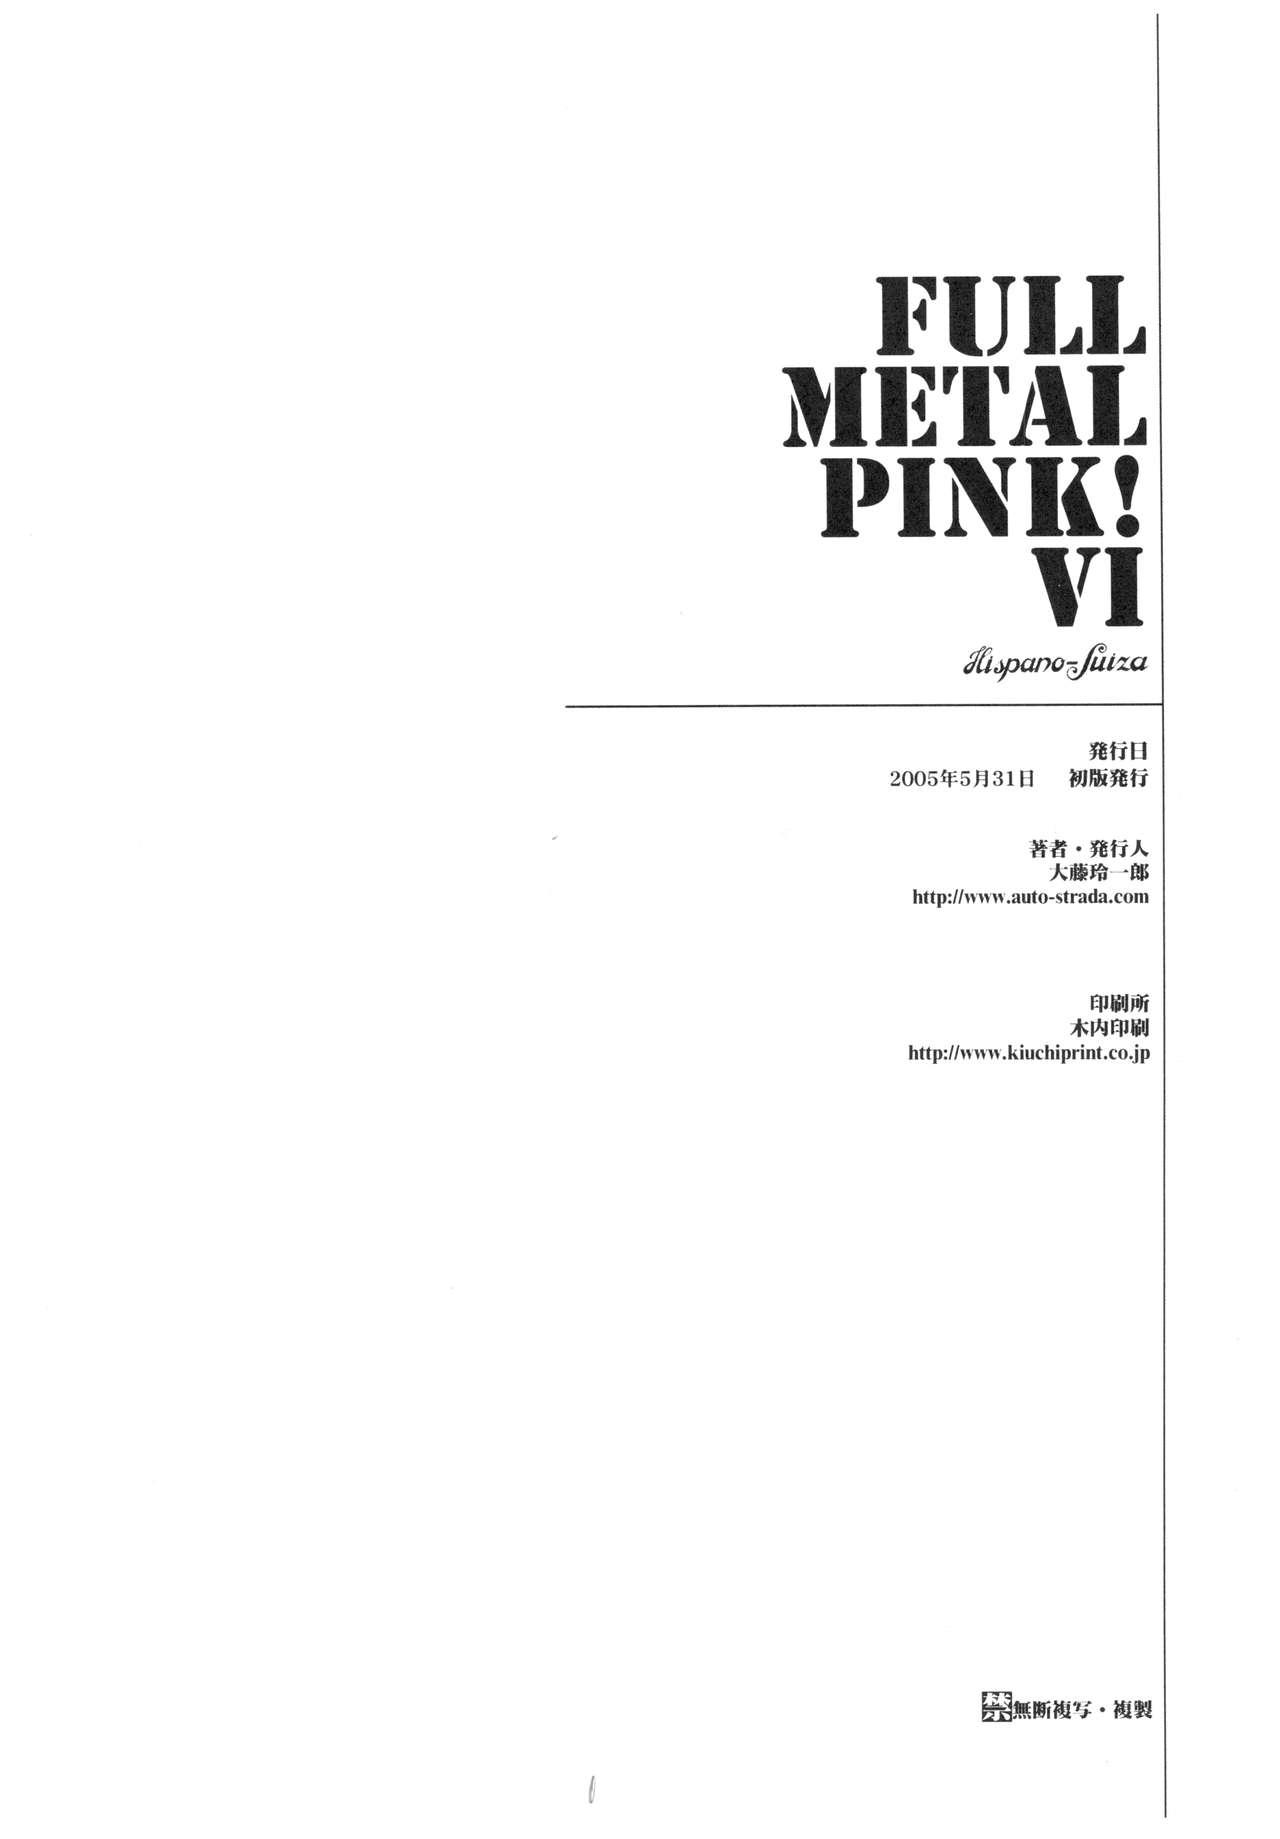 Full Metal Pink! VI 27